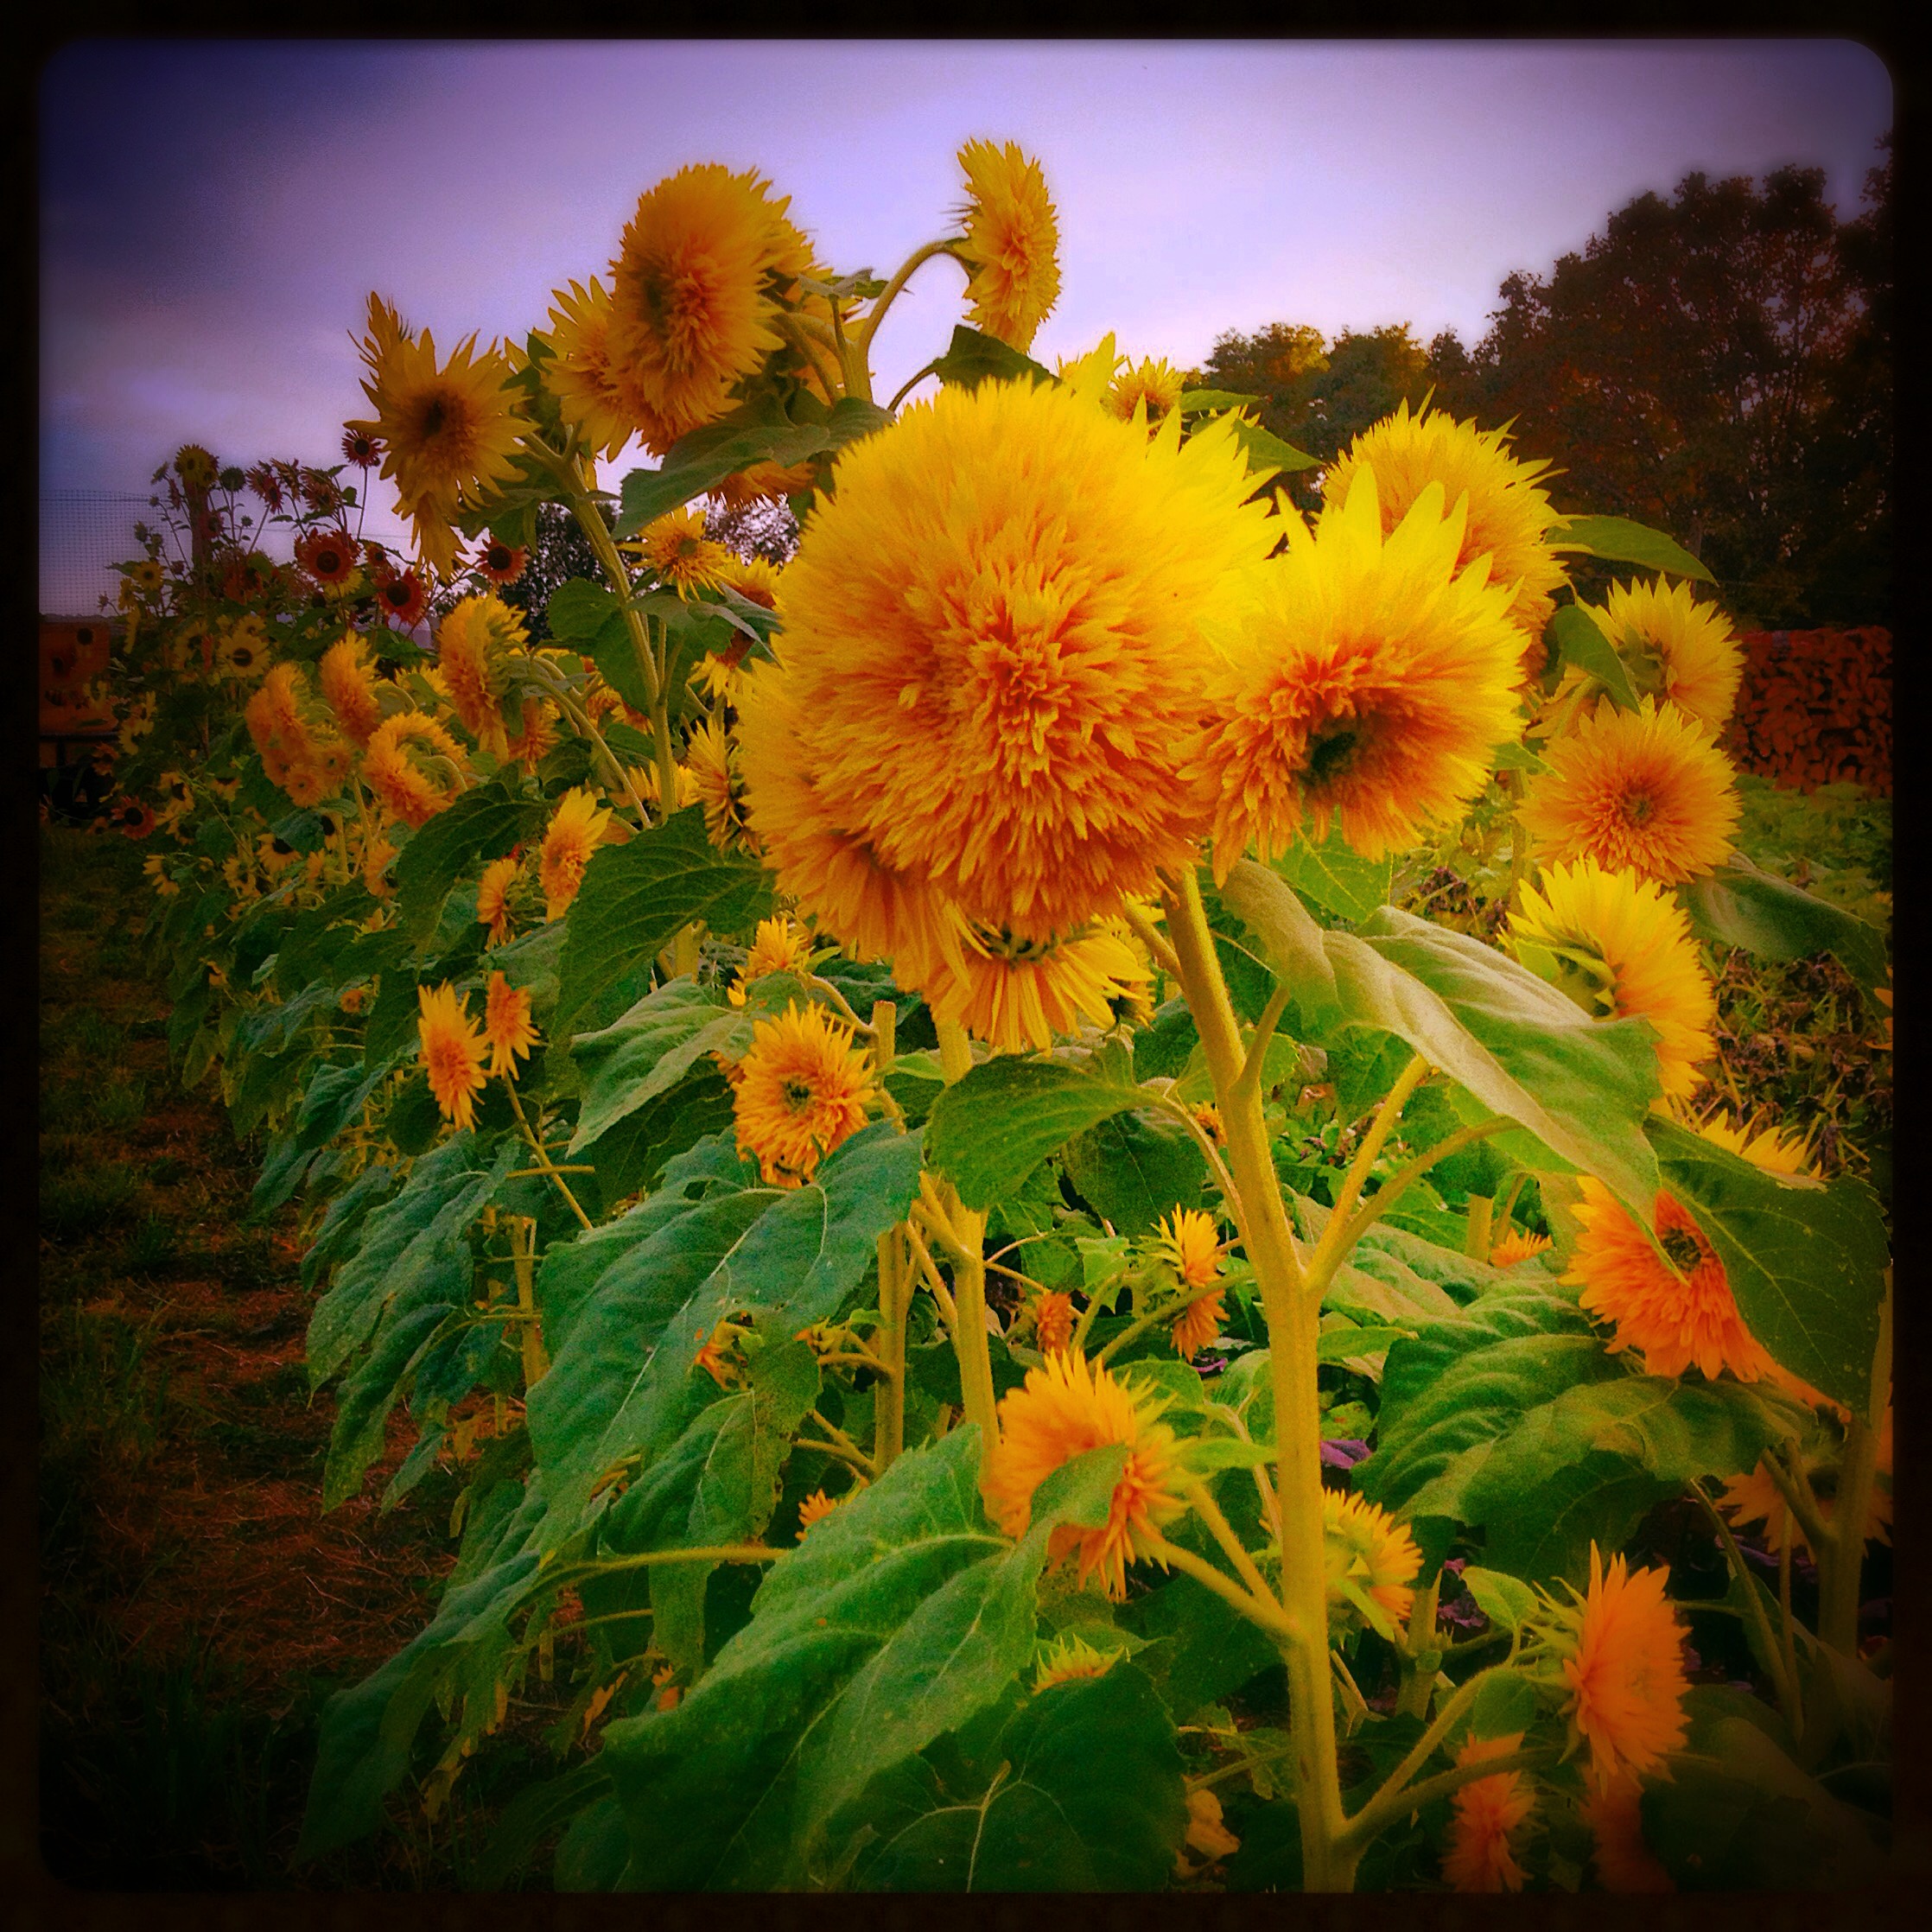  teddy bear sunflowers 